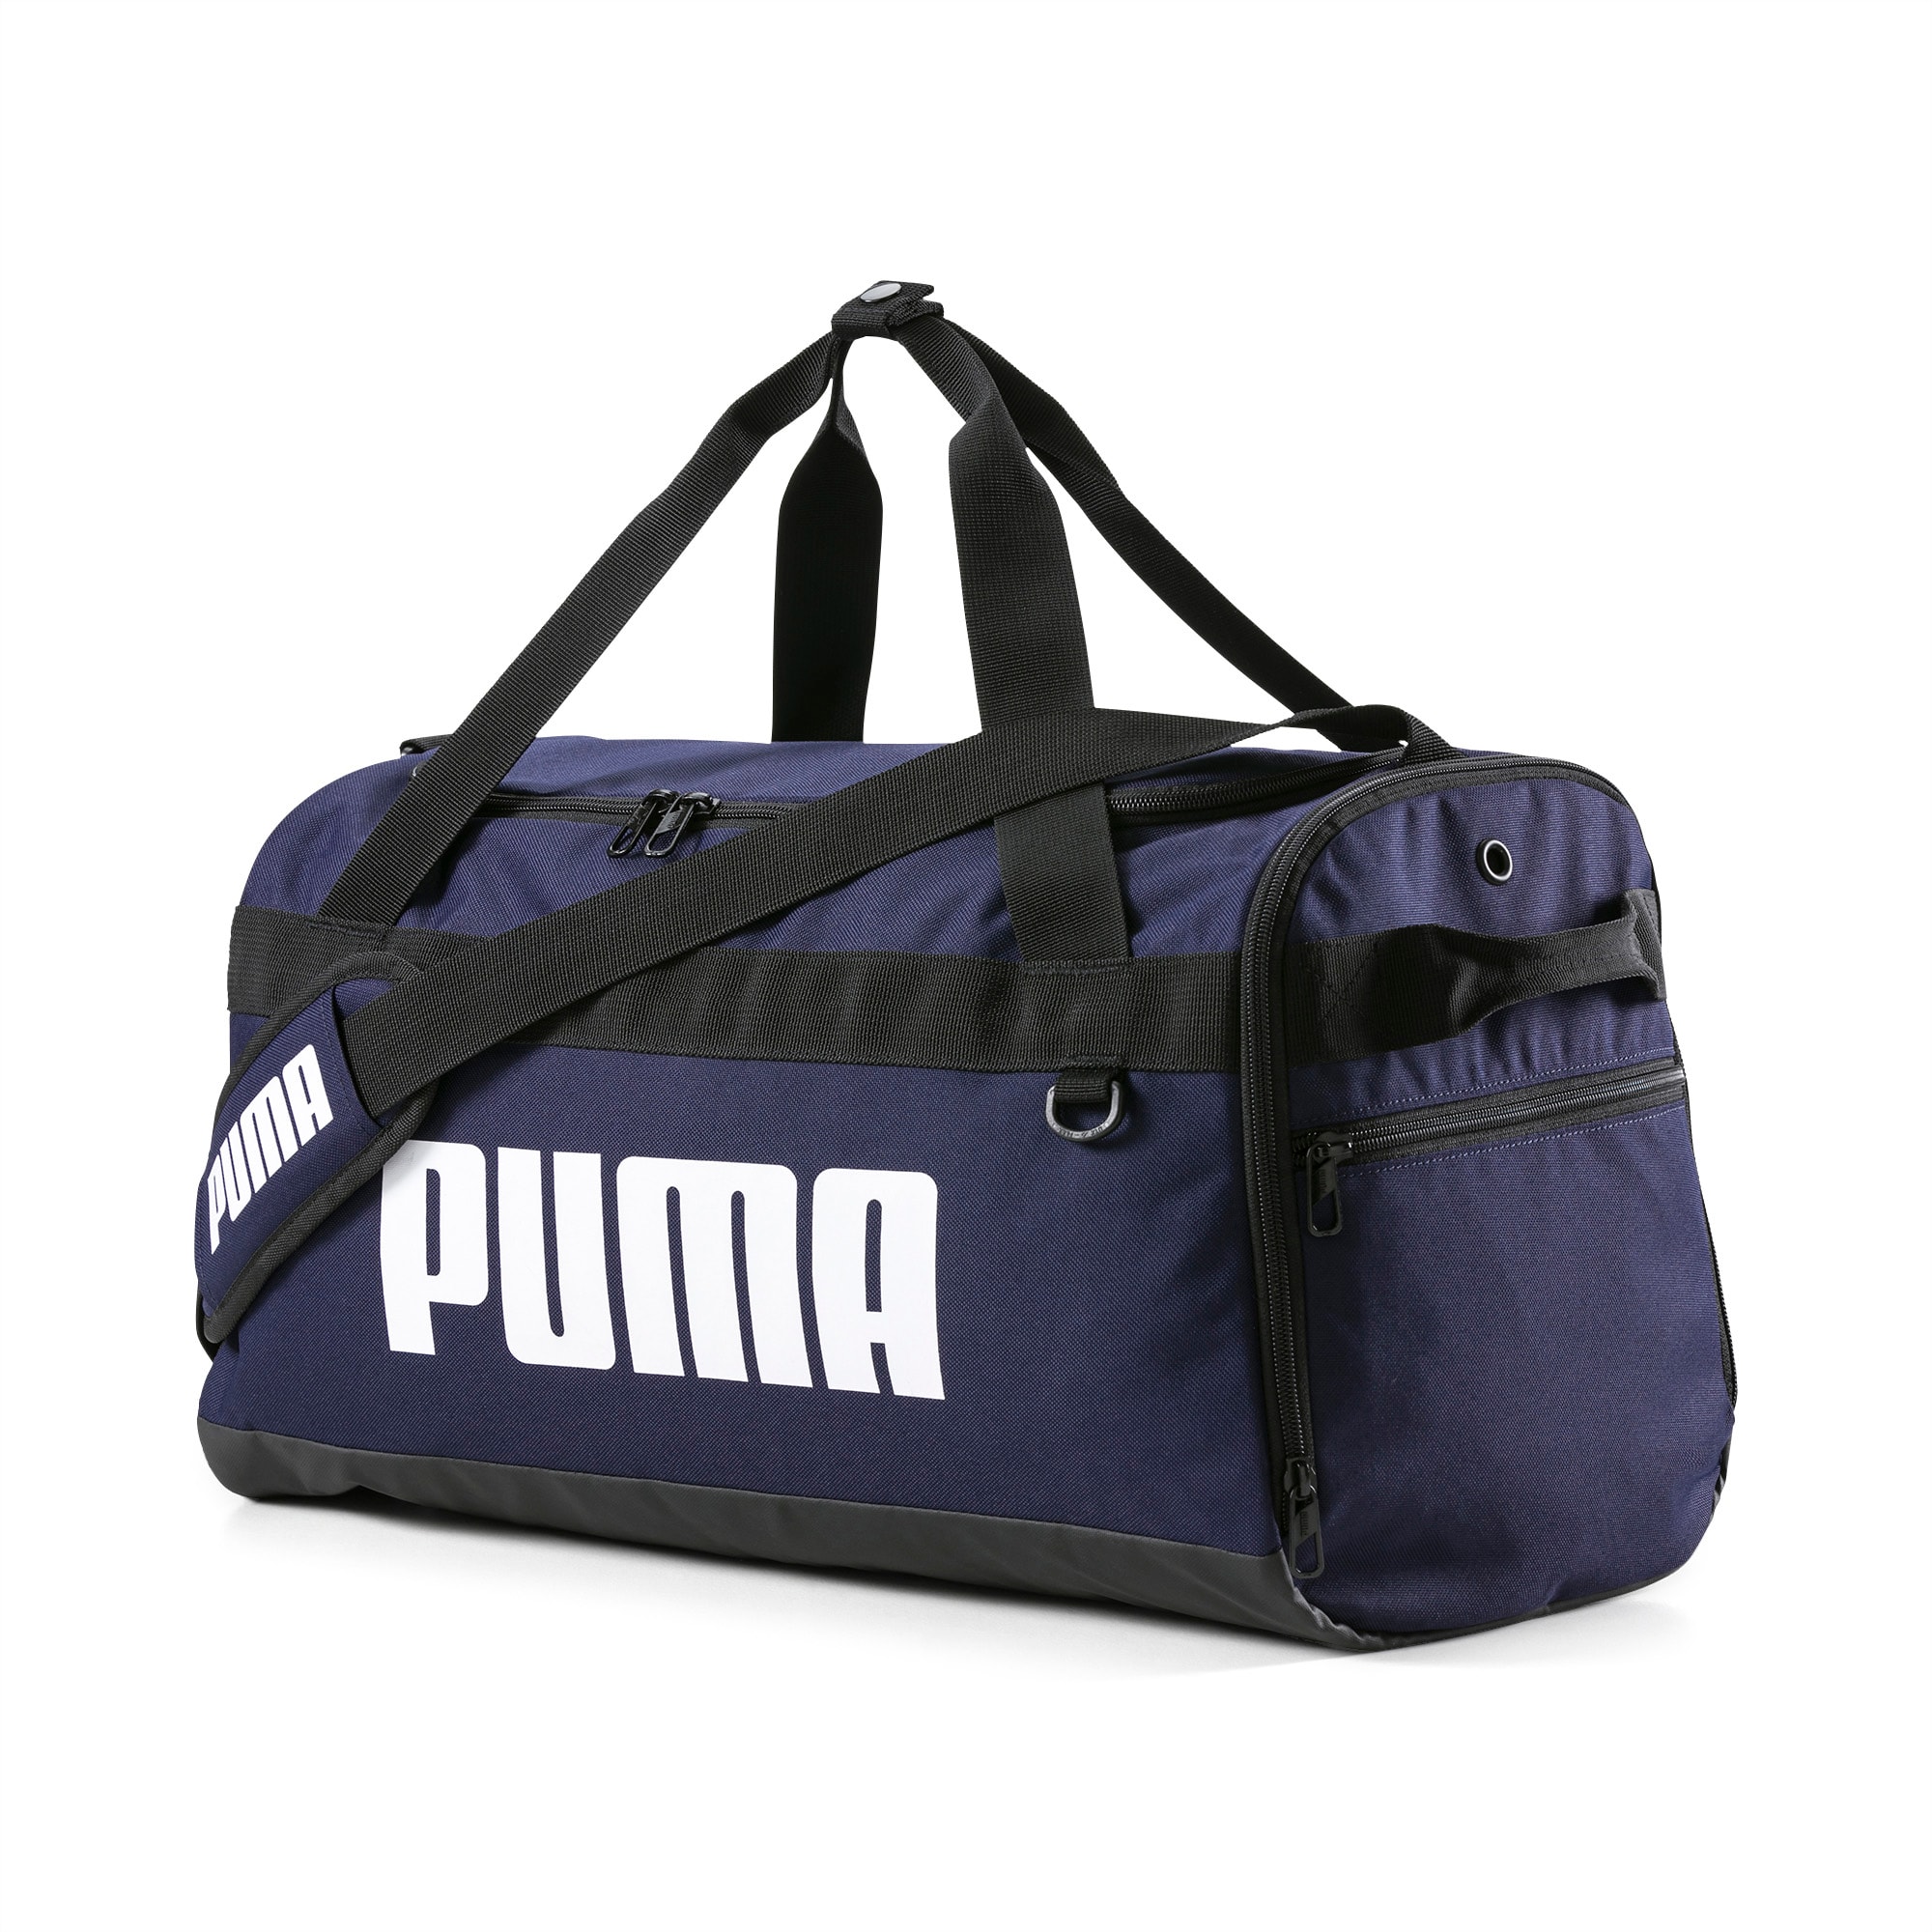 puma large duffel bag